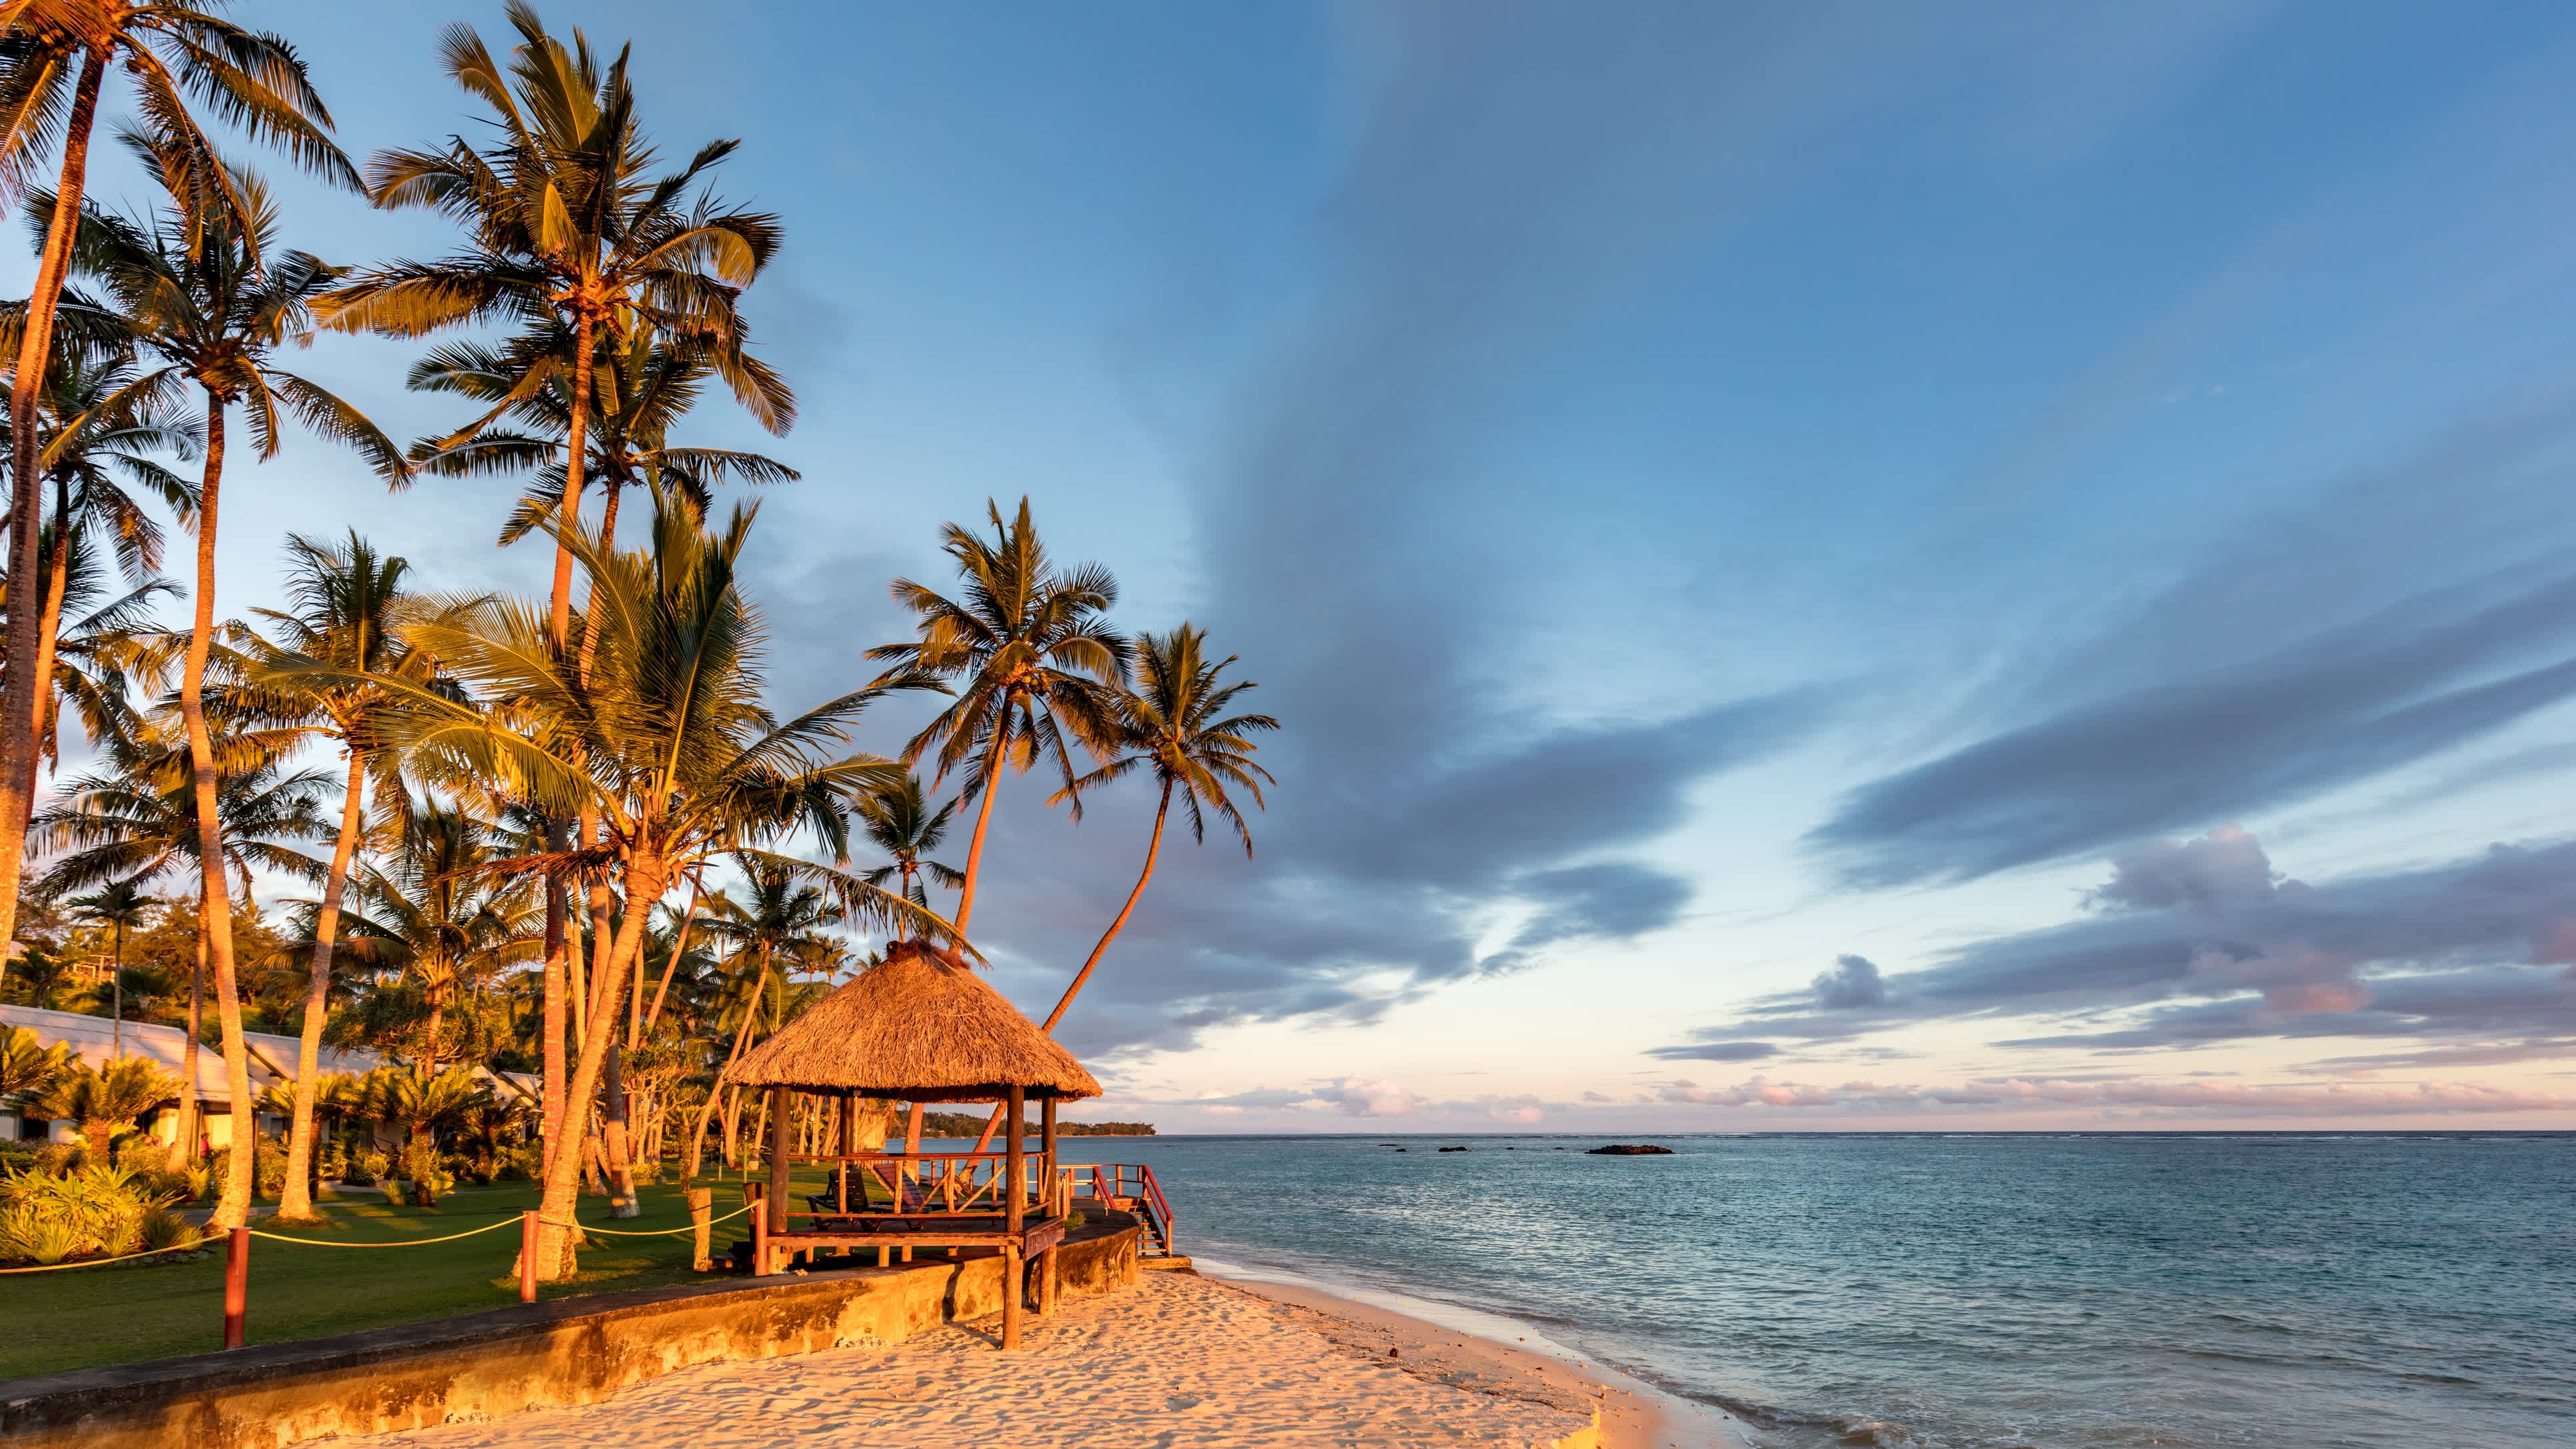 Coucher de soleil sur la plage de la Coral Coast sur l'île de Viti Levu, une des nombreuses plages dont vous pourrez profitez pendant votre voyage aux Fidji.